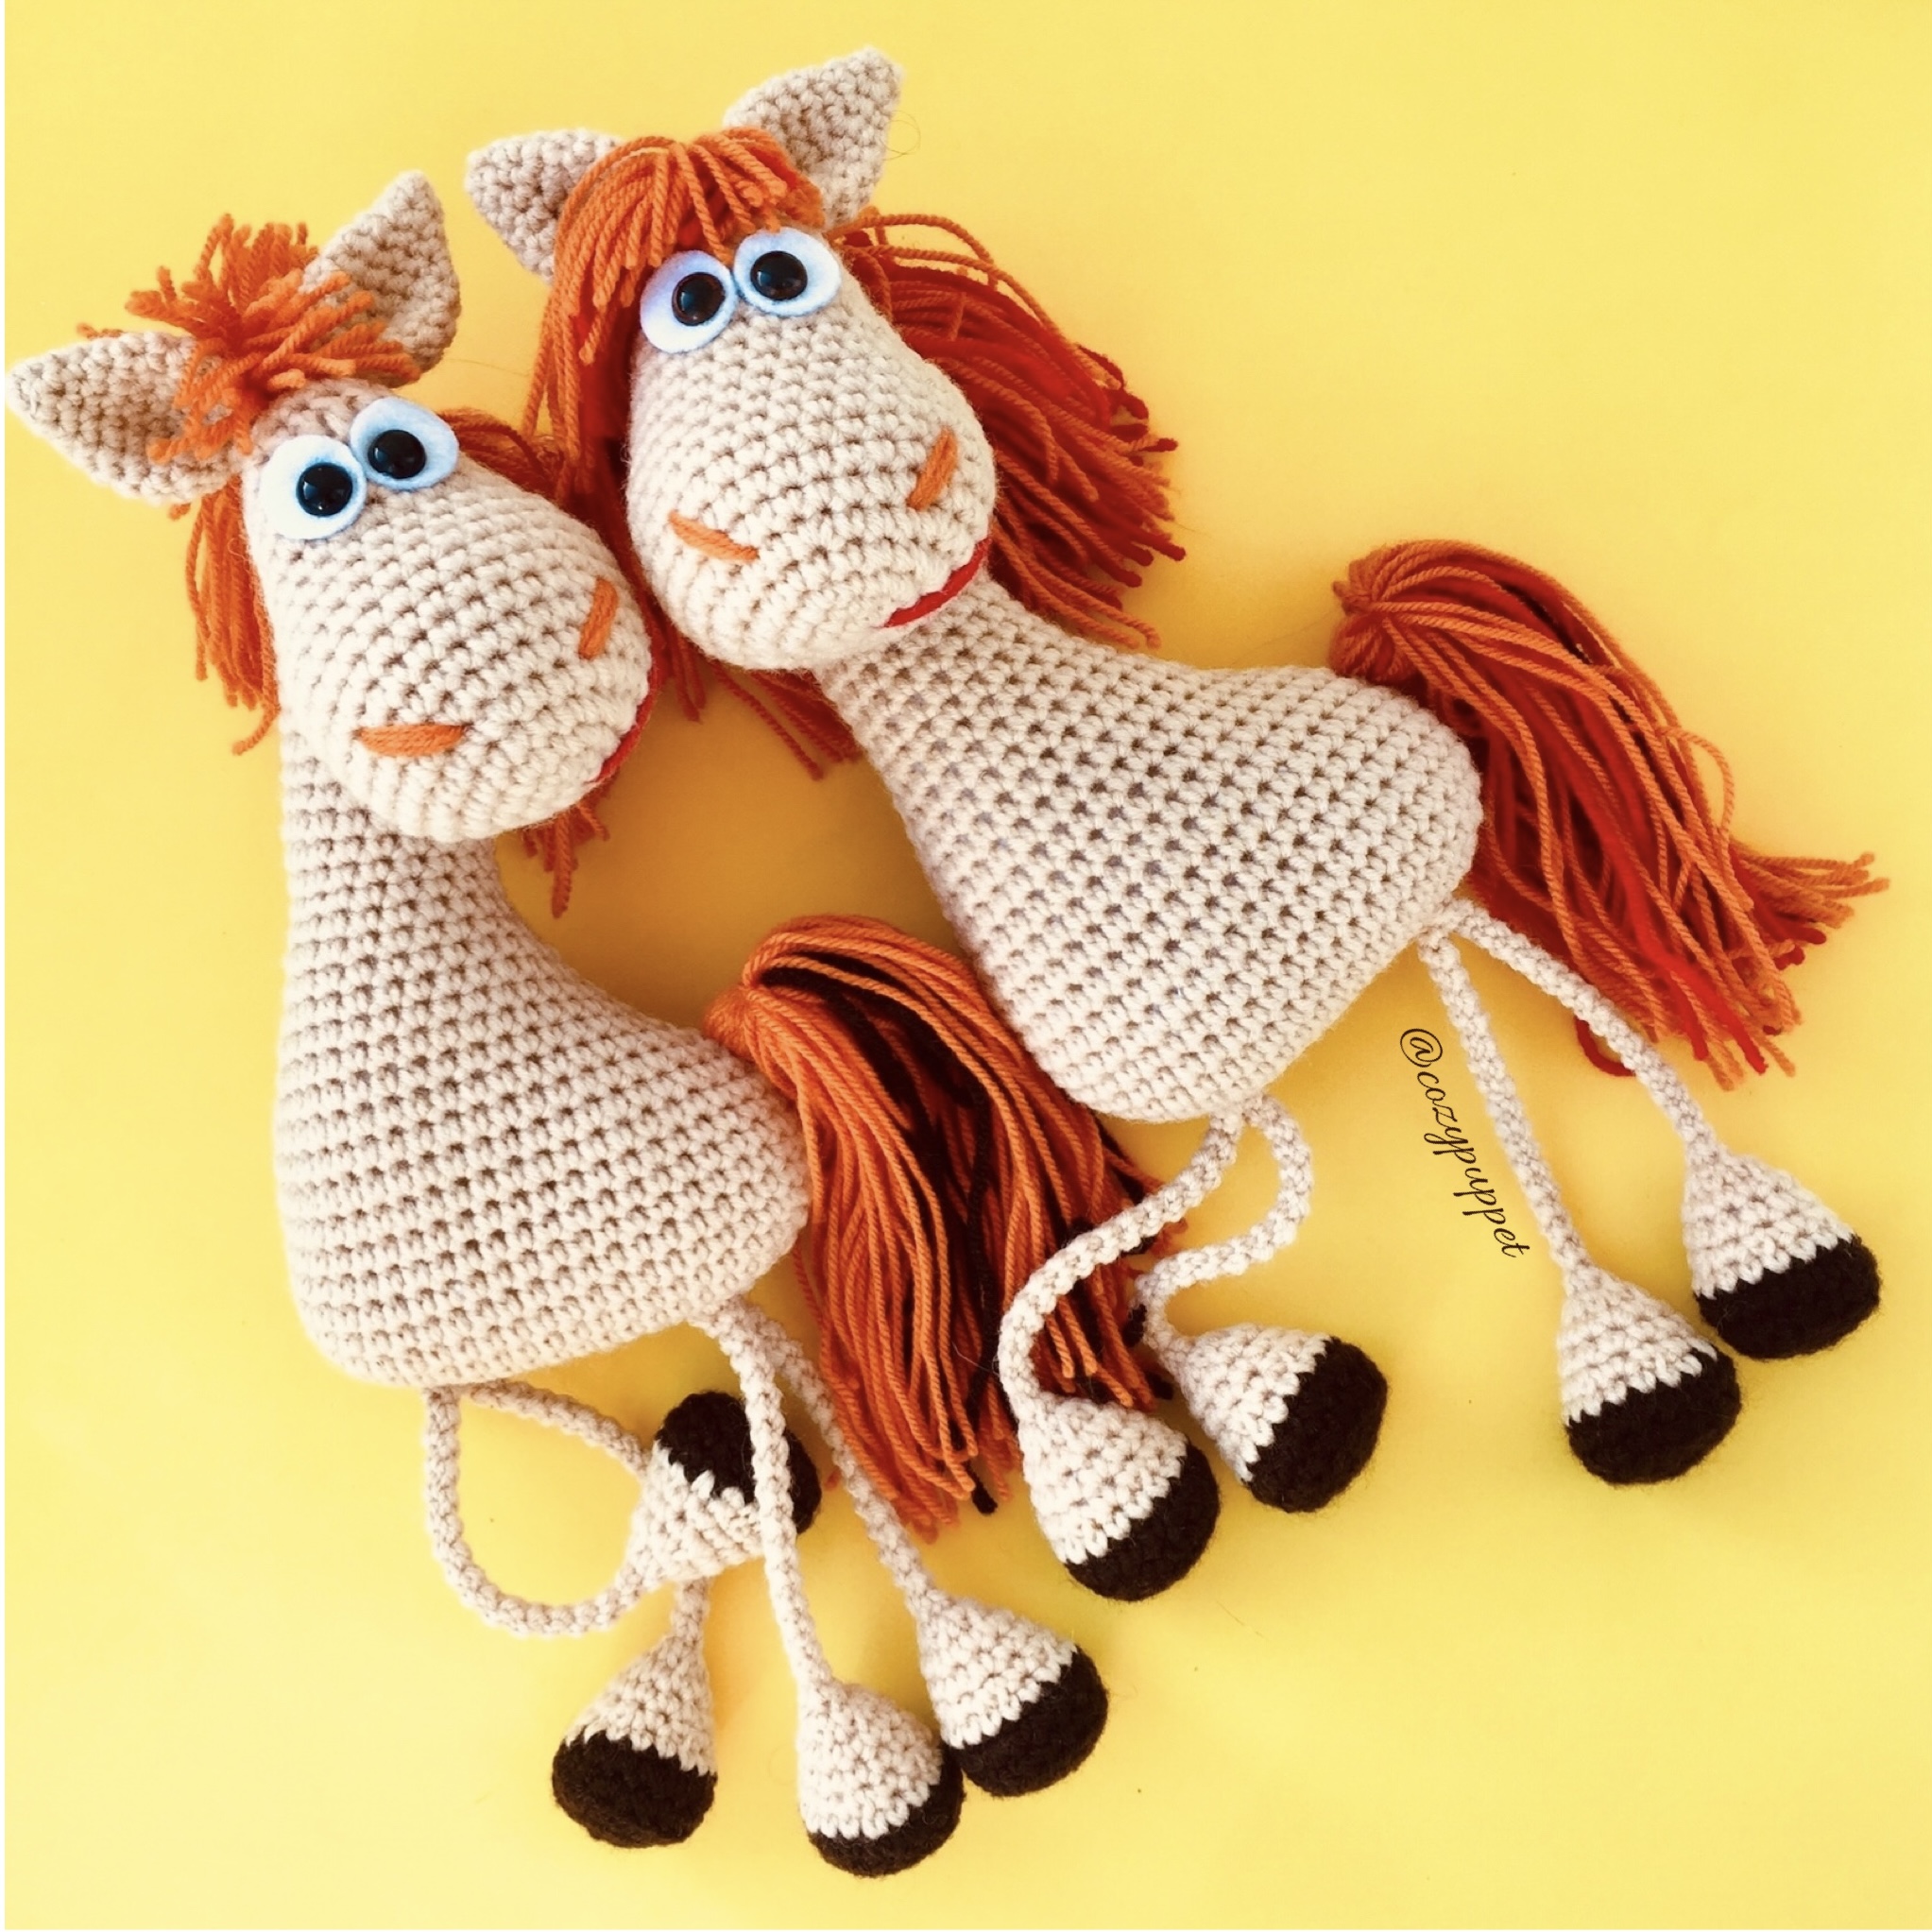 Modèle de crochet de marionnette à doigt de cheval. Modèle facile